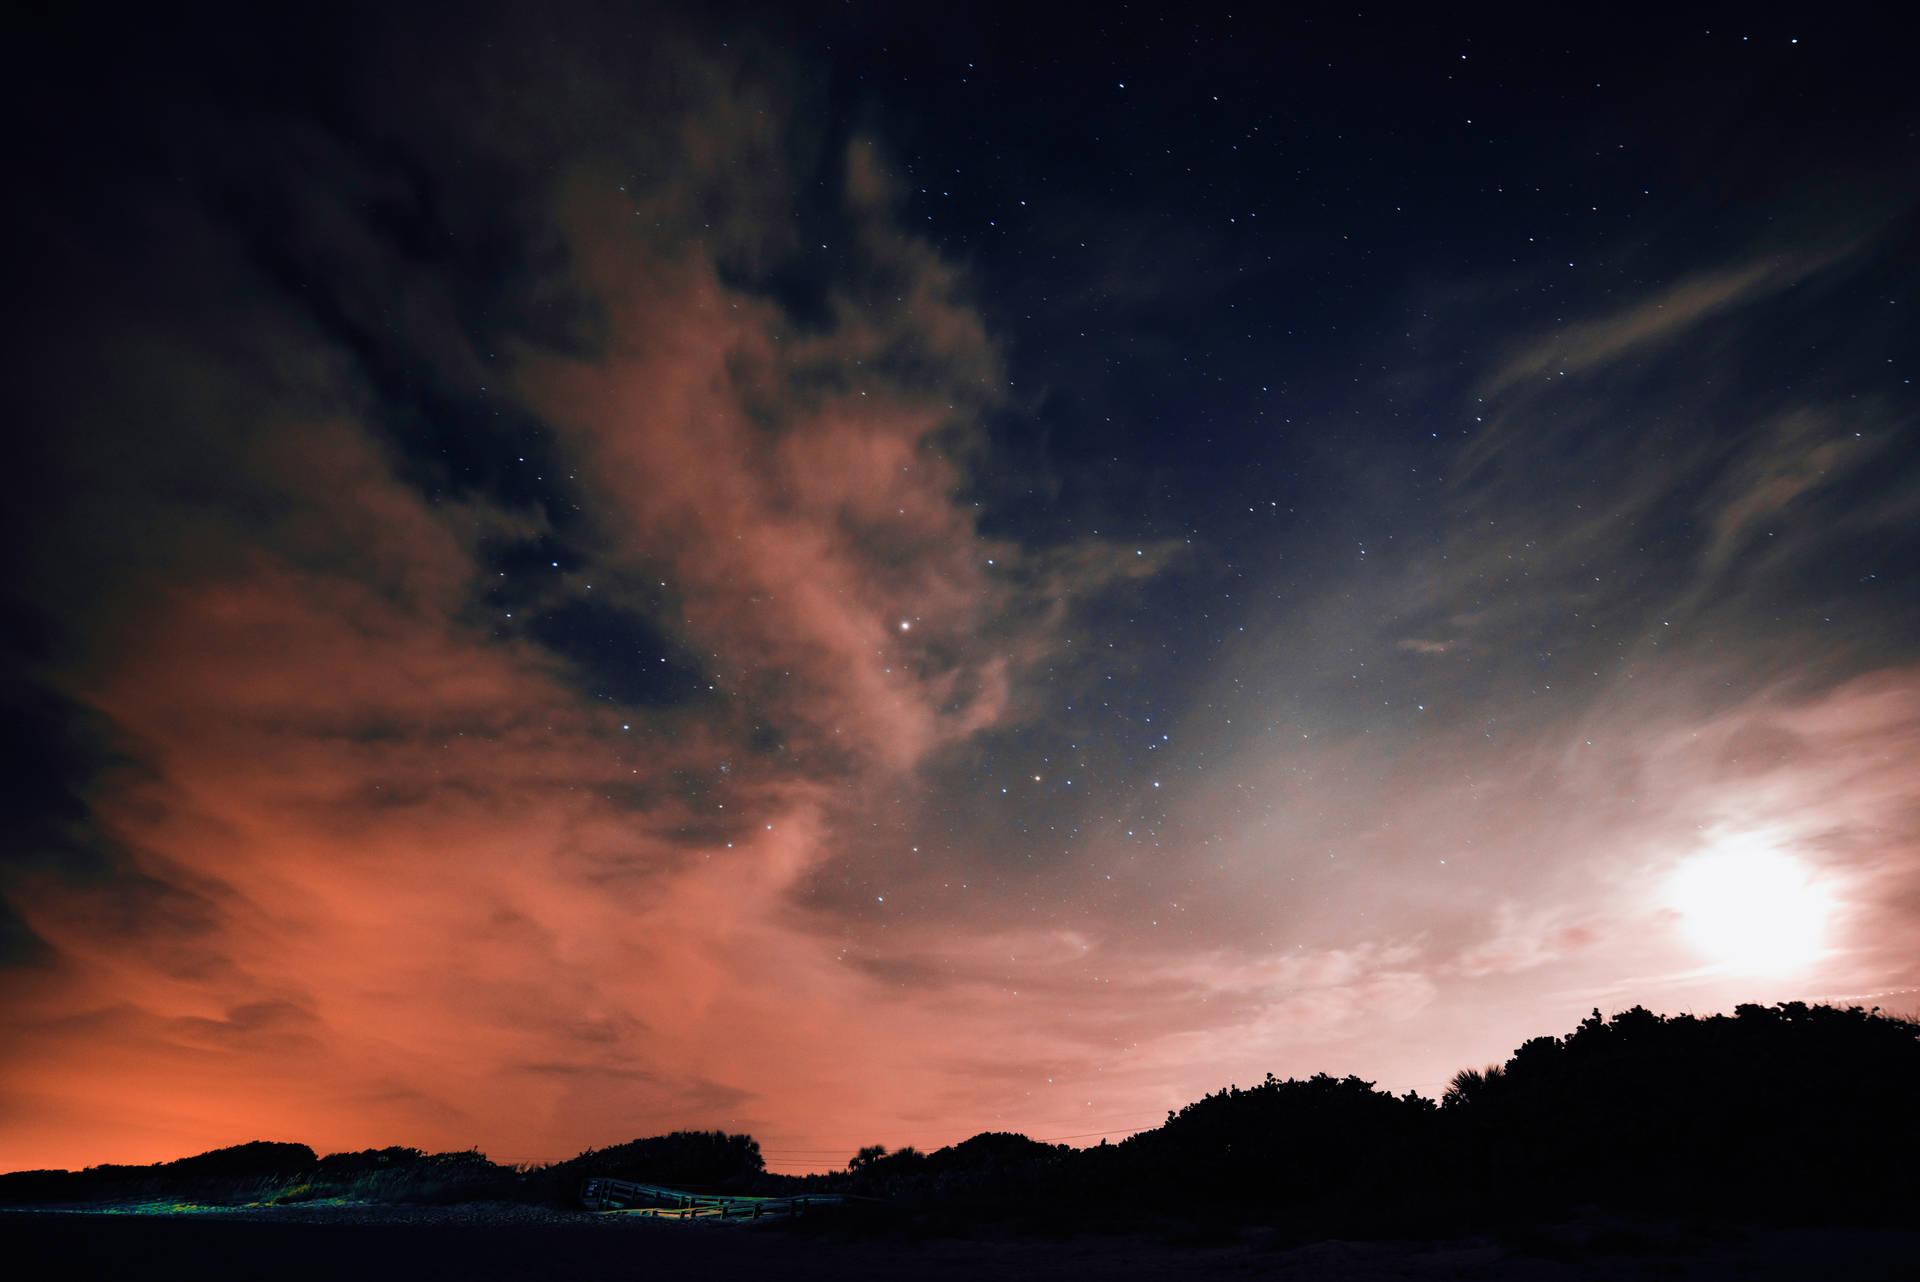 Night Sky Backgrounds